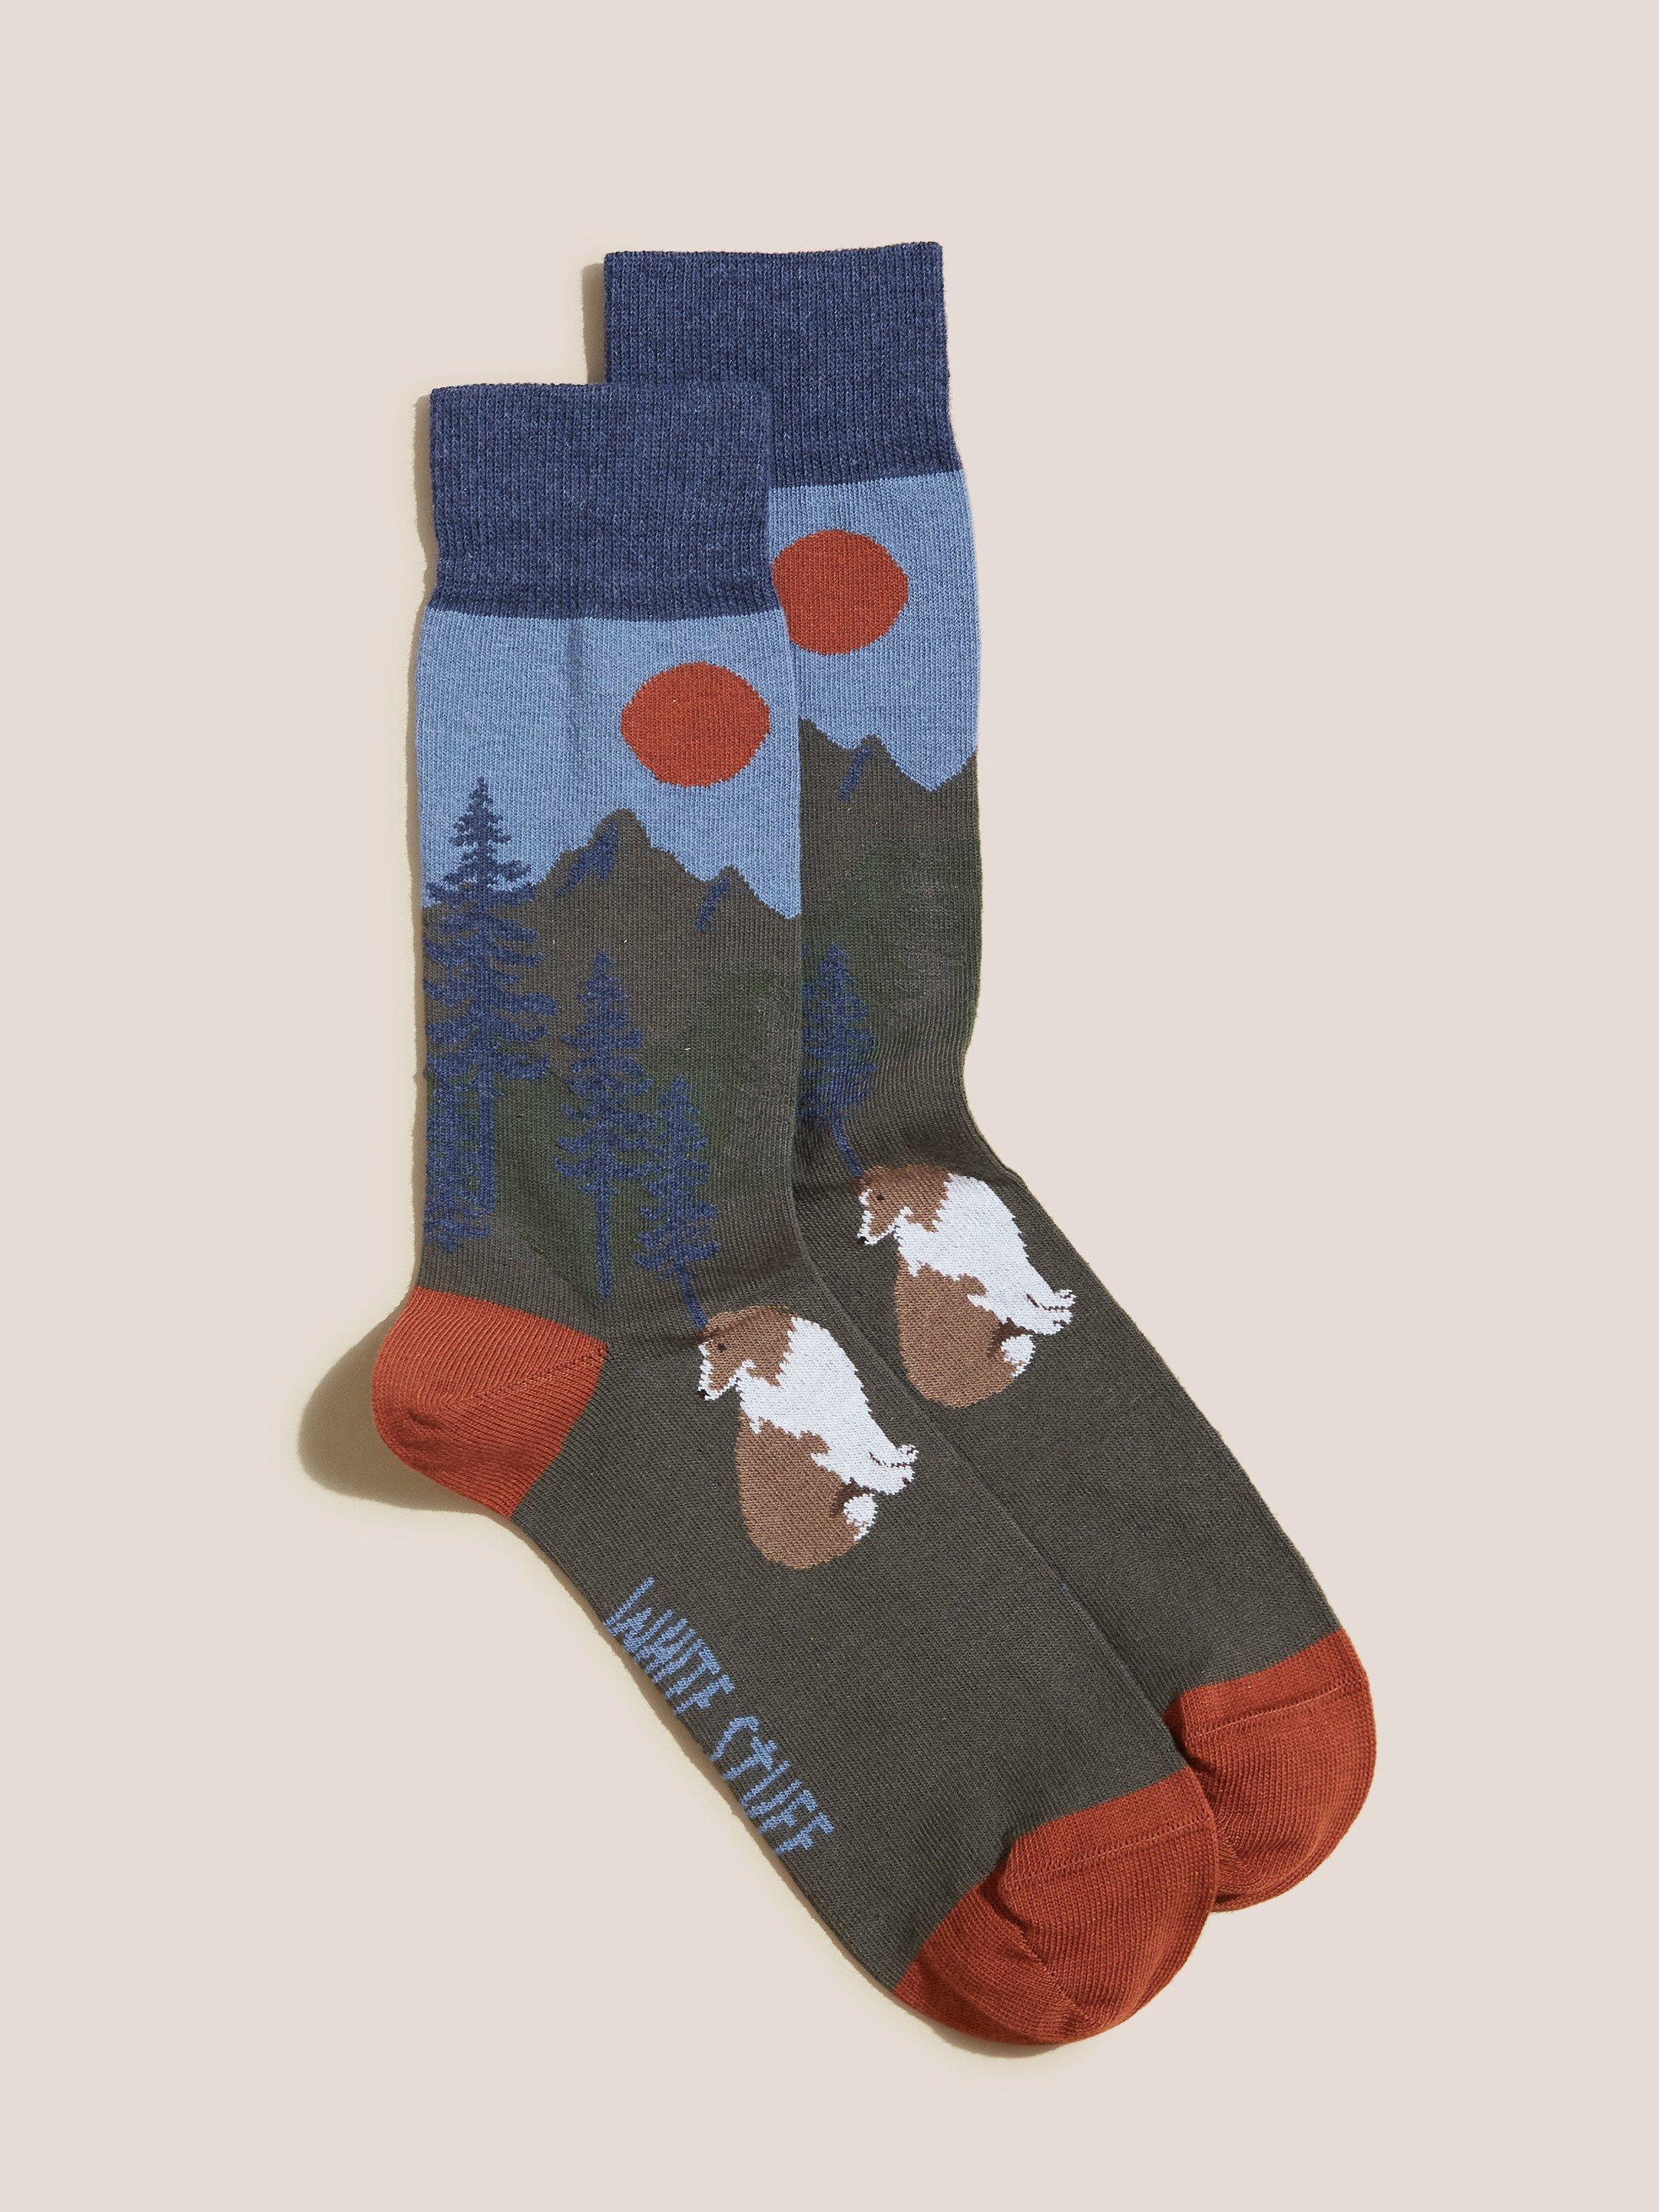 Scenic Dog Socks in NAVY MULTI - FLAT FRONT